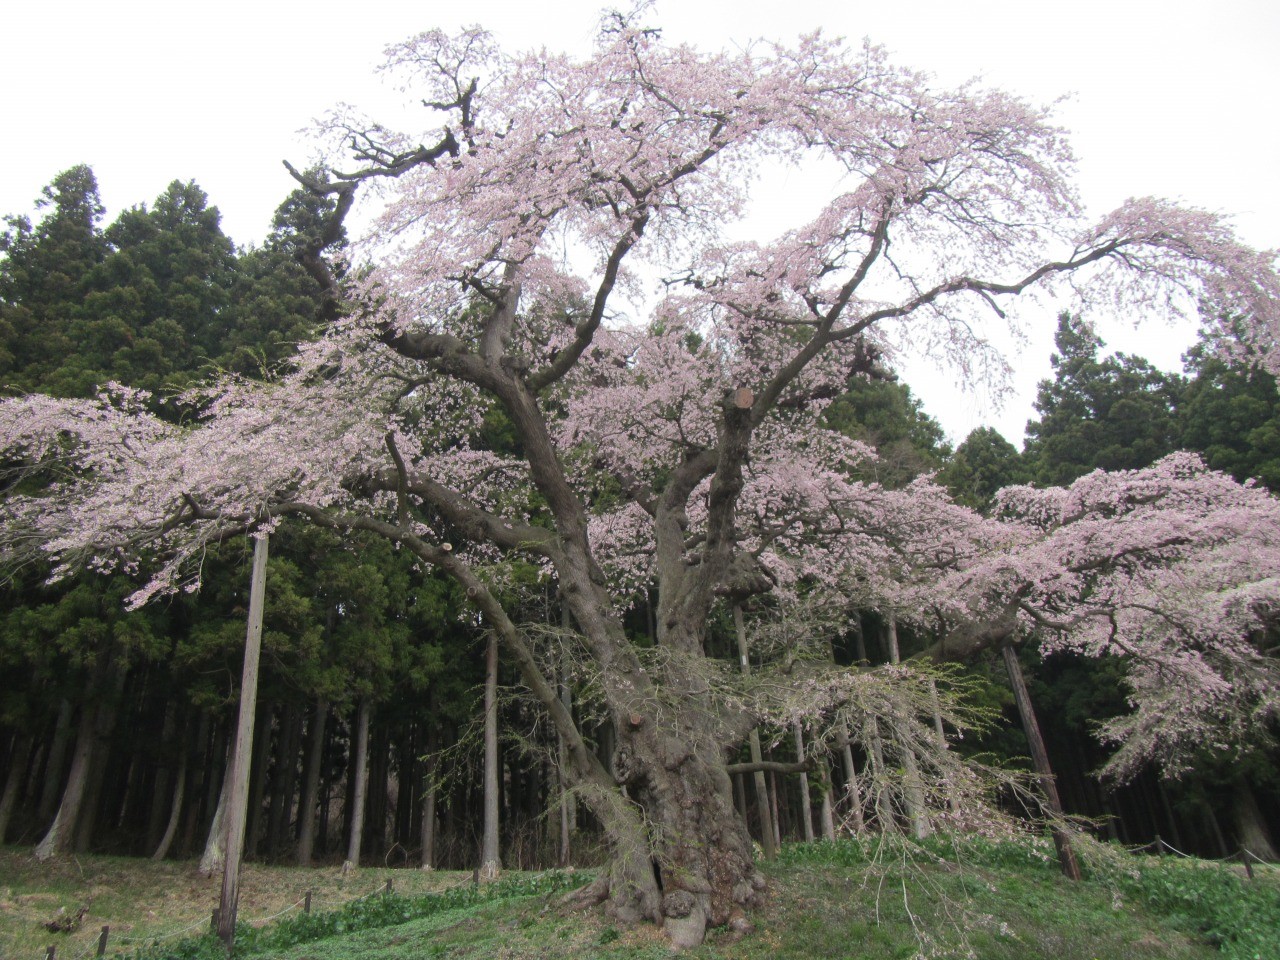 Iwakura cherry blossoms